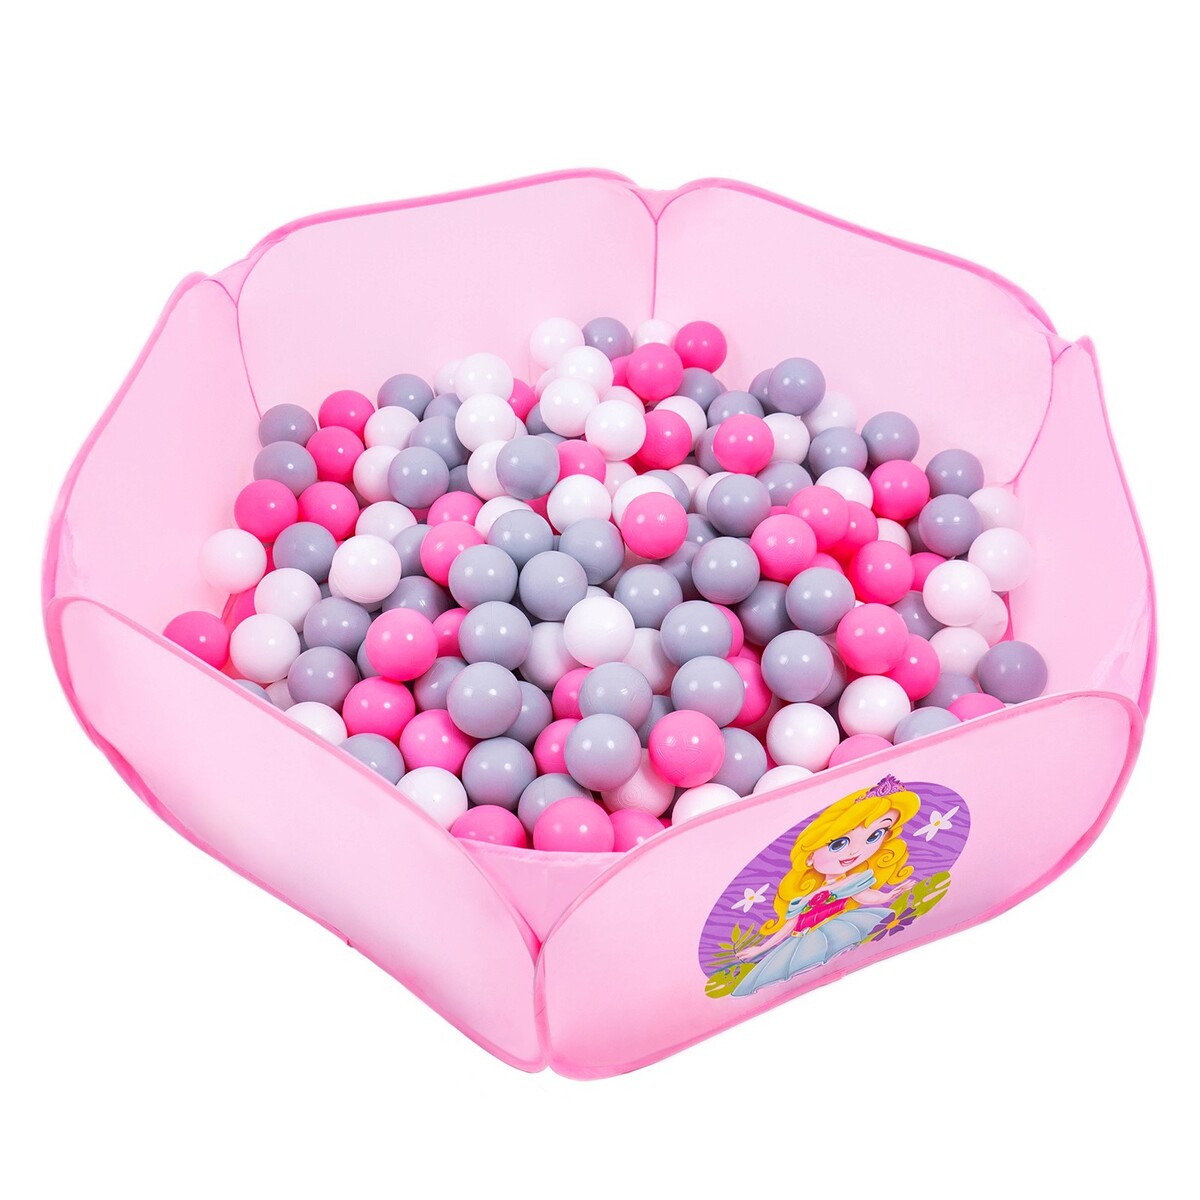 Шарики для сухого бассейна с рисунком, диаметр шара 7,5 см, набор 30 штук, цвет розовый, белый, серый шарики для сухого бассейна диаметр 5 см 50 шт